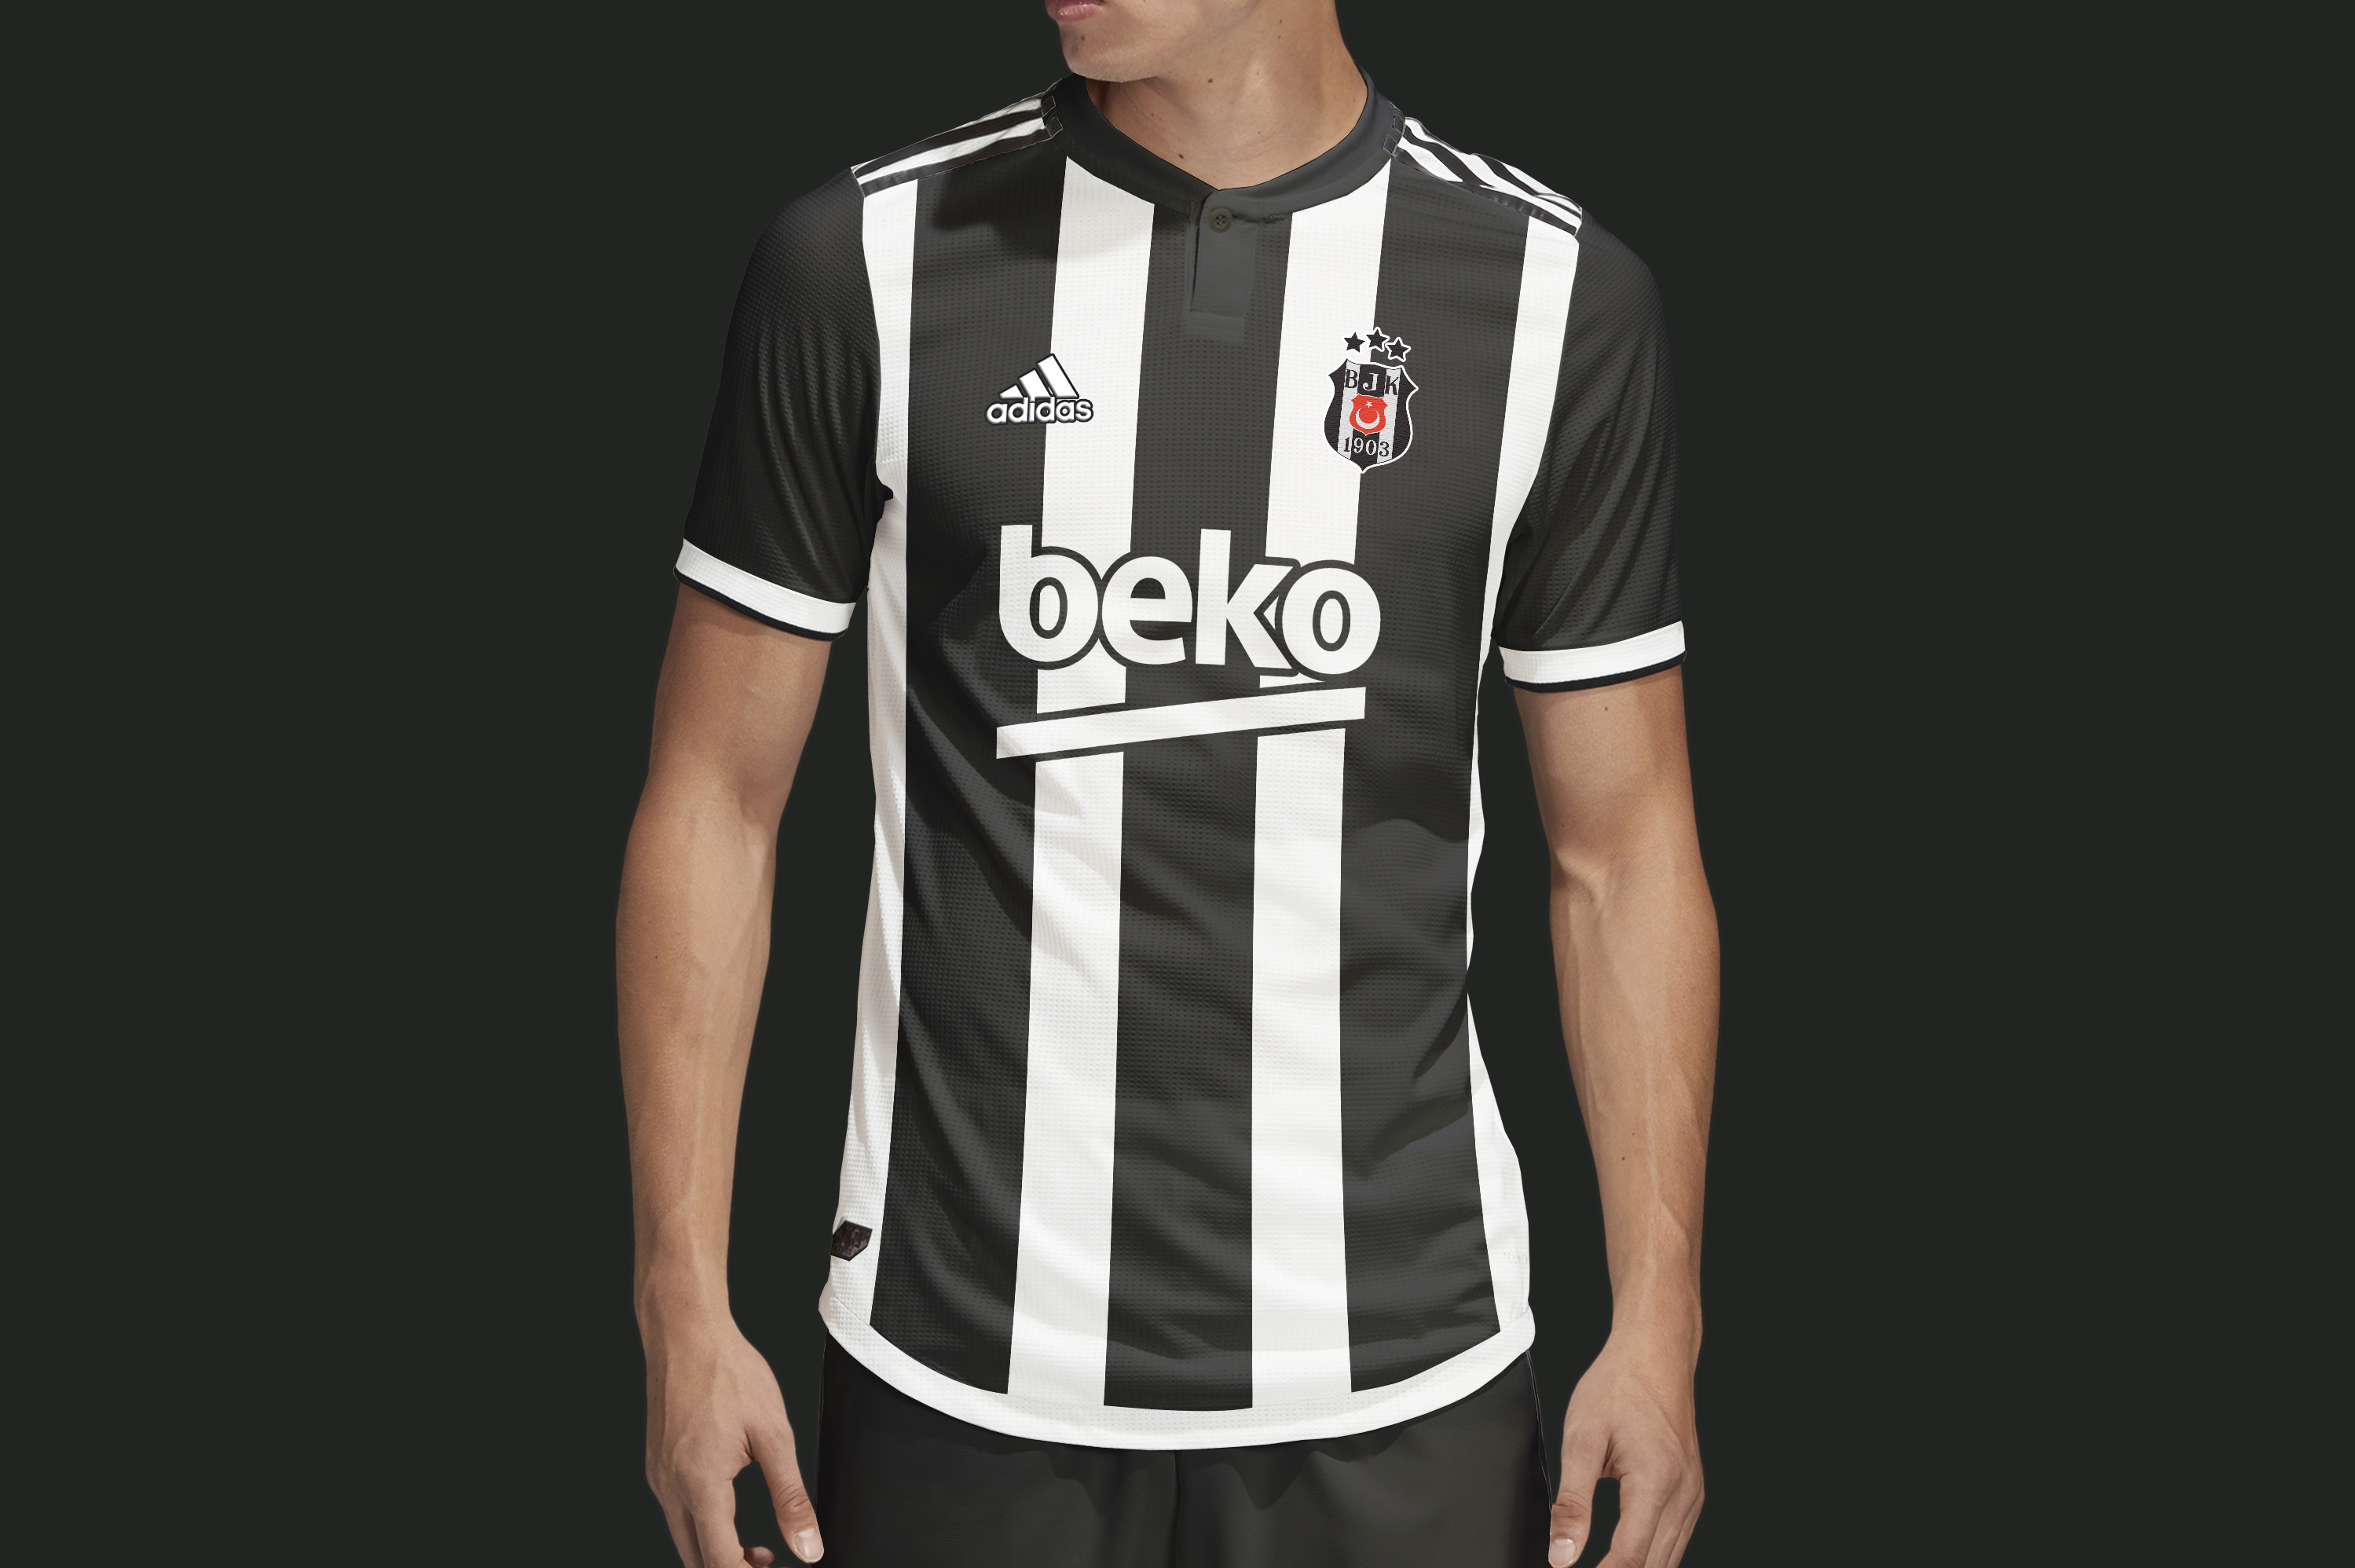 beşiktaşformaları on X: "Beşiktaş & Adidas, çubuklu forma tasarımı. # besiktas #besiktasformasi #bjk #besiktasinmacivar https://t.co/gDL6GbY1qR"  / X